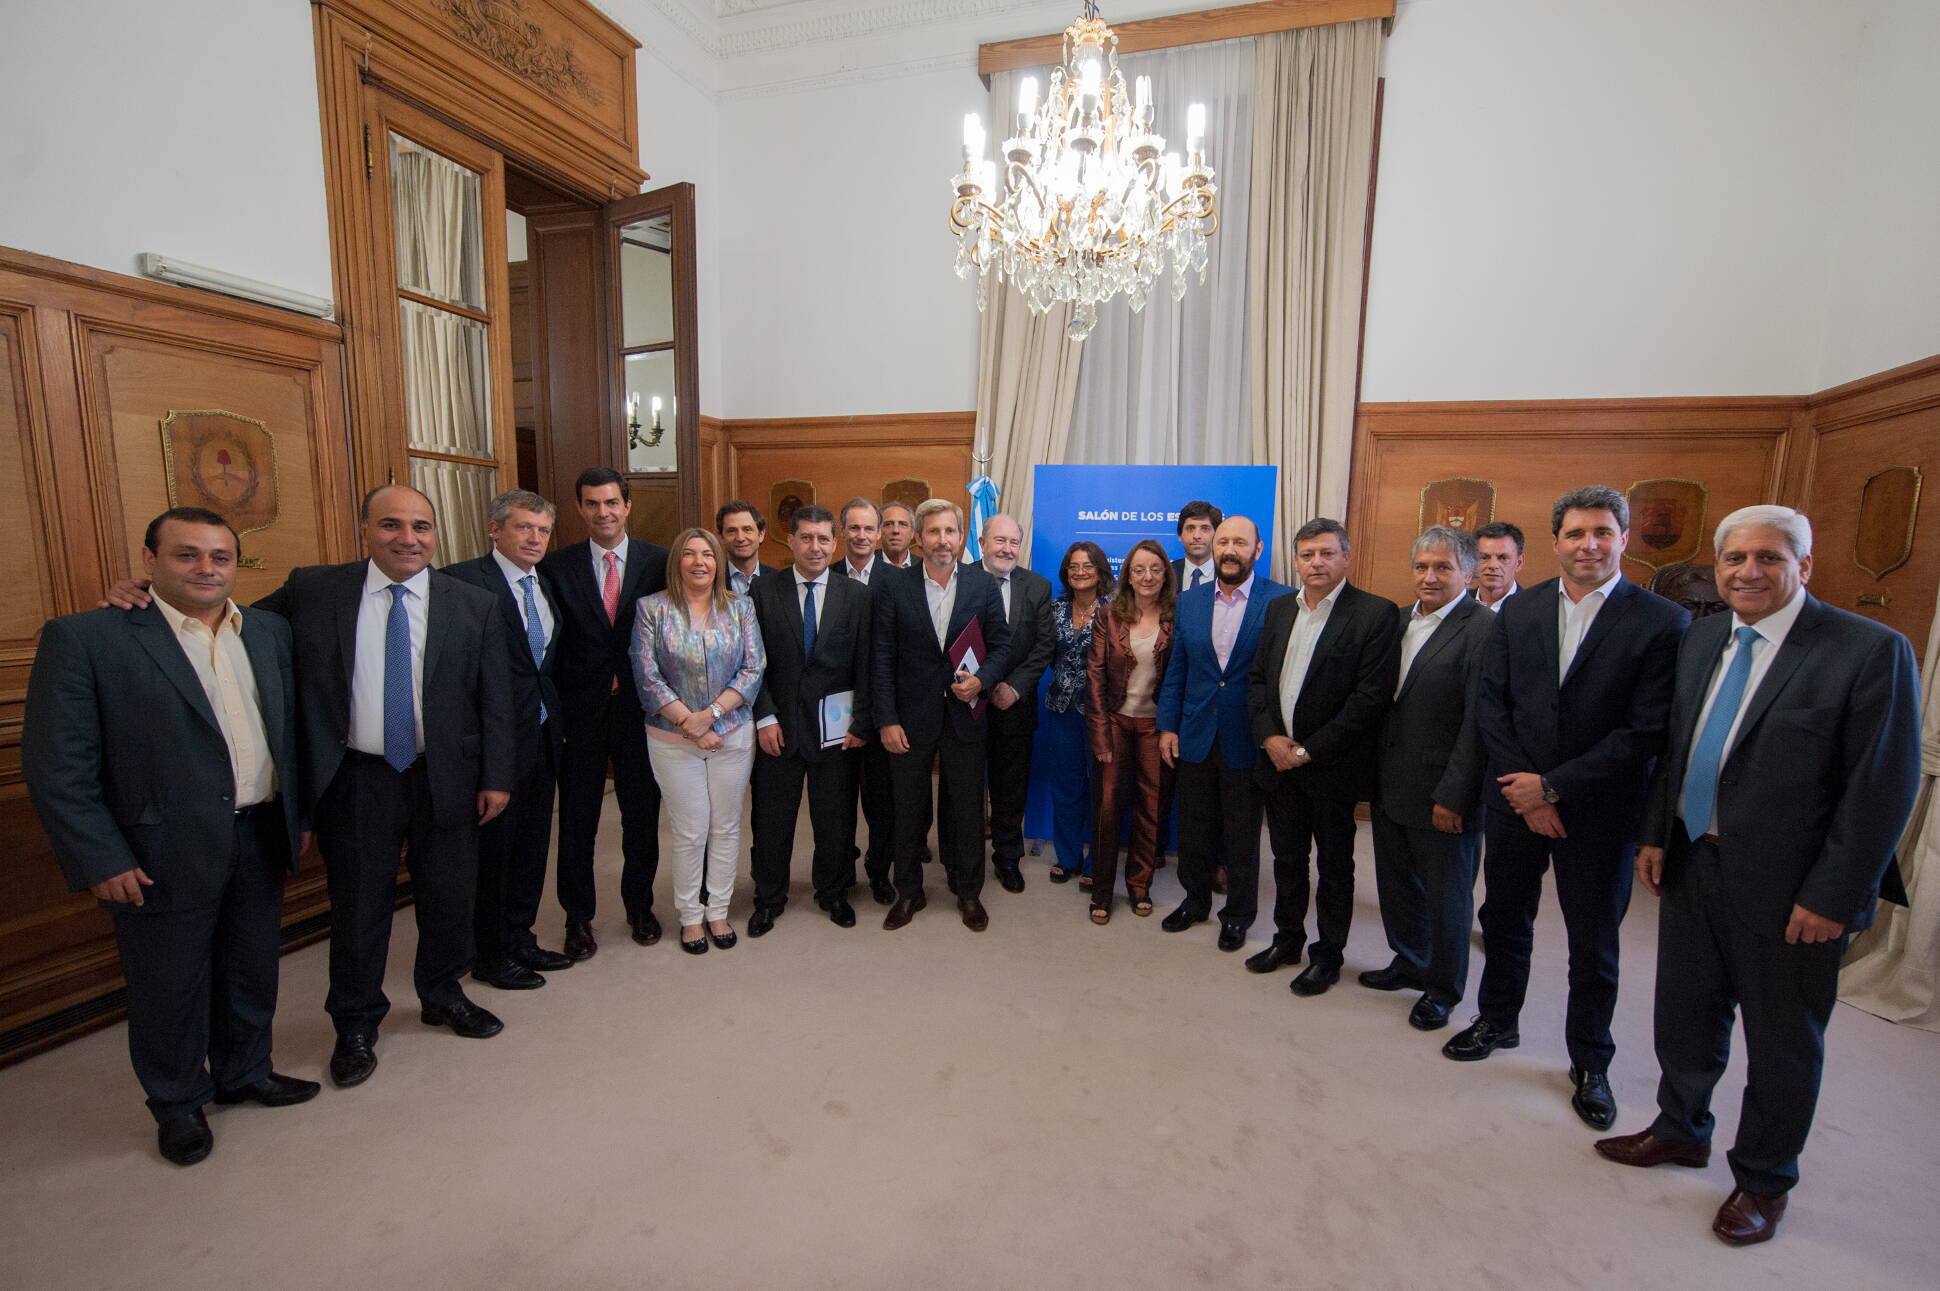 Rogelio Frigerio, Emilio Monzó y gobernadores en Casa de Gobierno